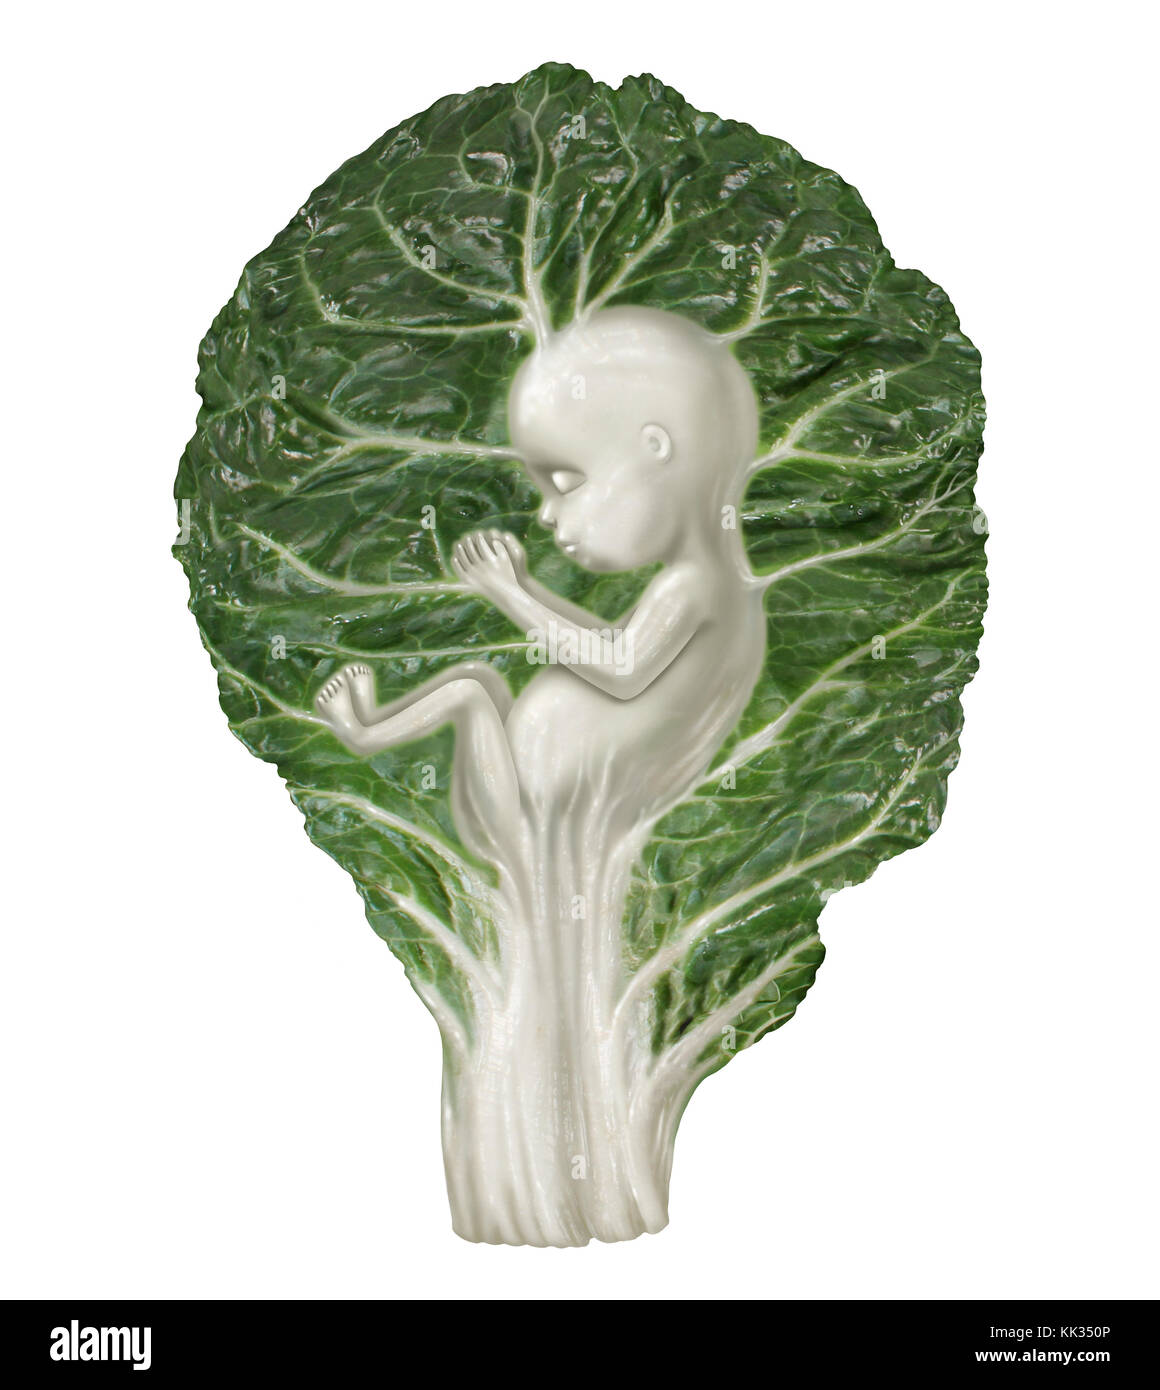 Nutrizione in gravidanza e mangiare cibo sano per lo sviluppo del bambino come un cavolo foglia vegetale conformata come un feto umano come mangiare per il tuo bimbo. Foto Stock